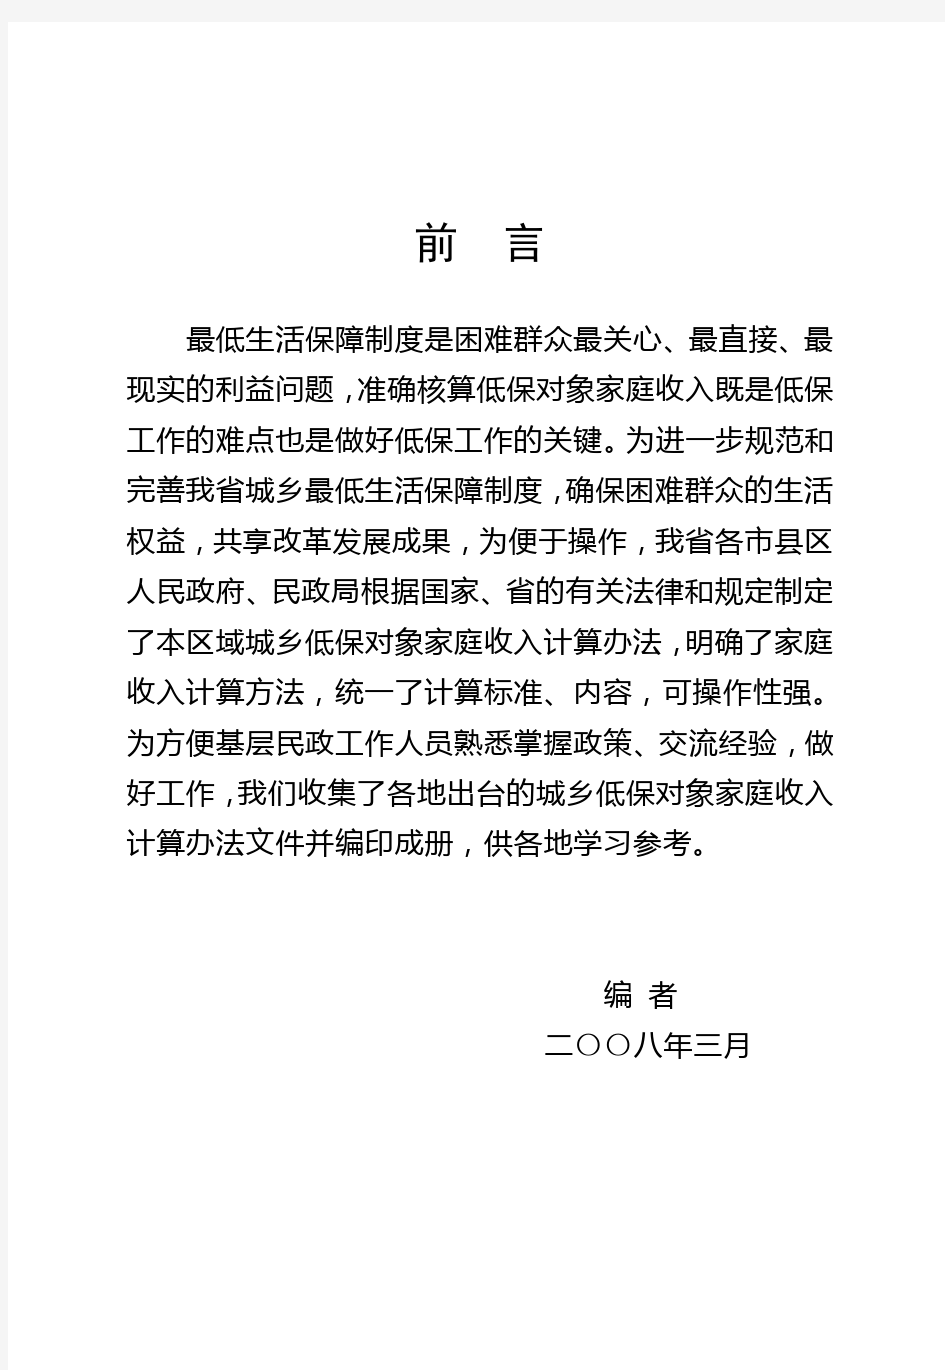 广东省各市县区低保对象家庭收入计算办法文件汇编